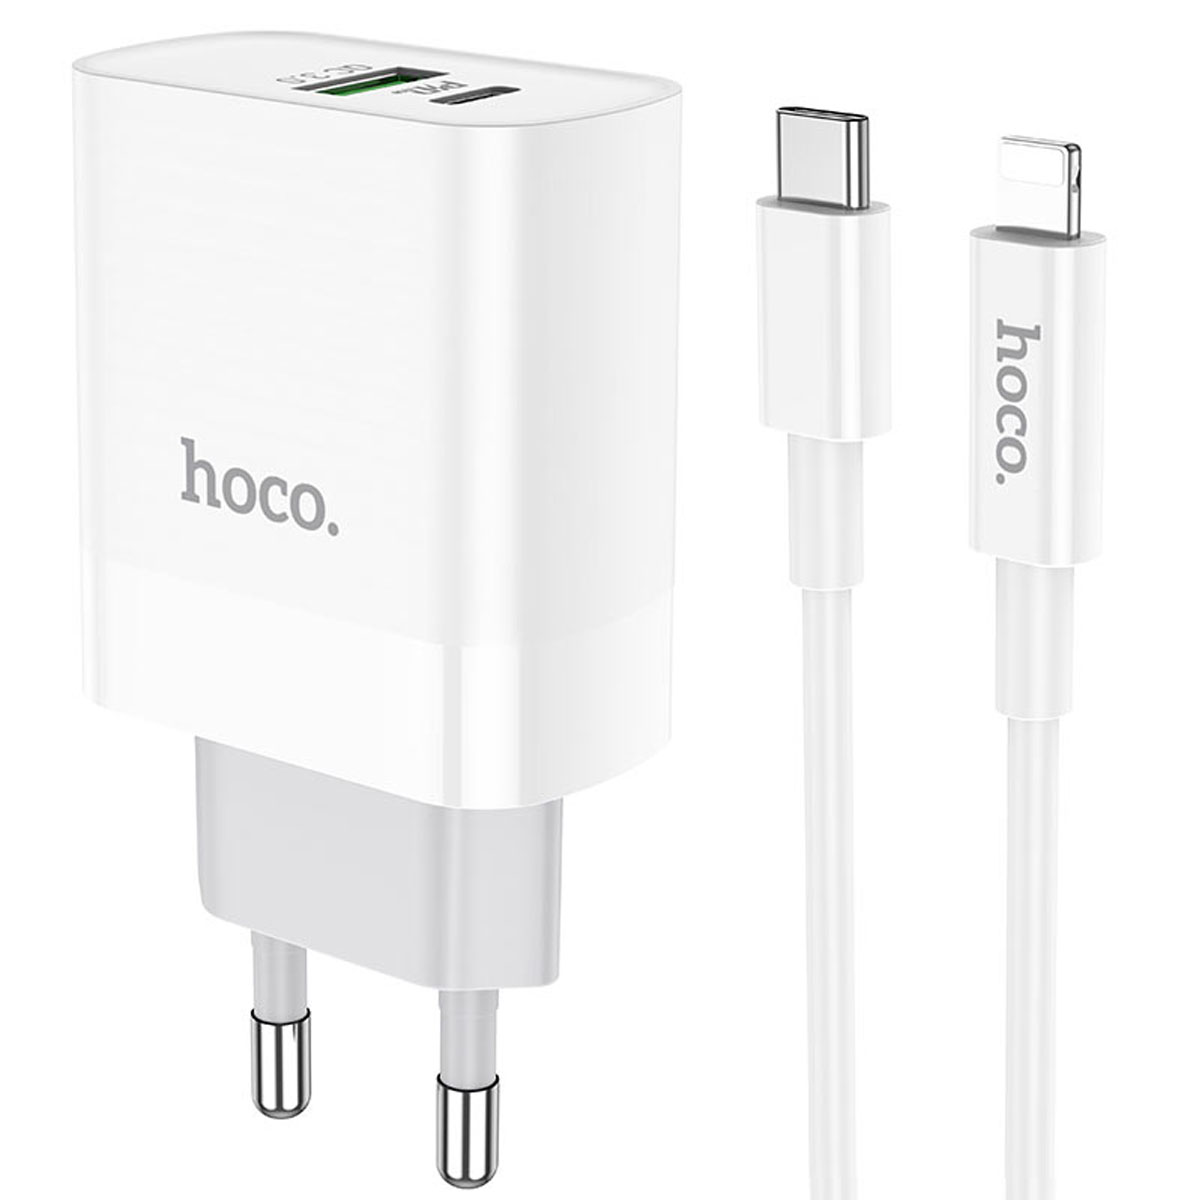 СЗУ (Сетевое зарядное устройство) HOCO C80A Rapido с кабелем USB Type C на Lightning 8 pin, 20W, 1 USB Type C, 1 USB, QC3.0, PD20W, длина 1 метр, цвет белый